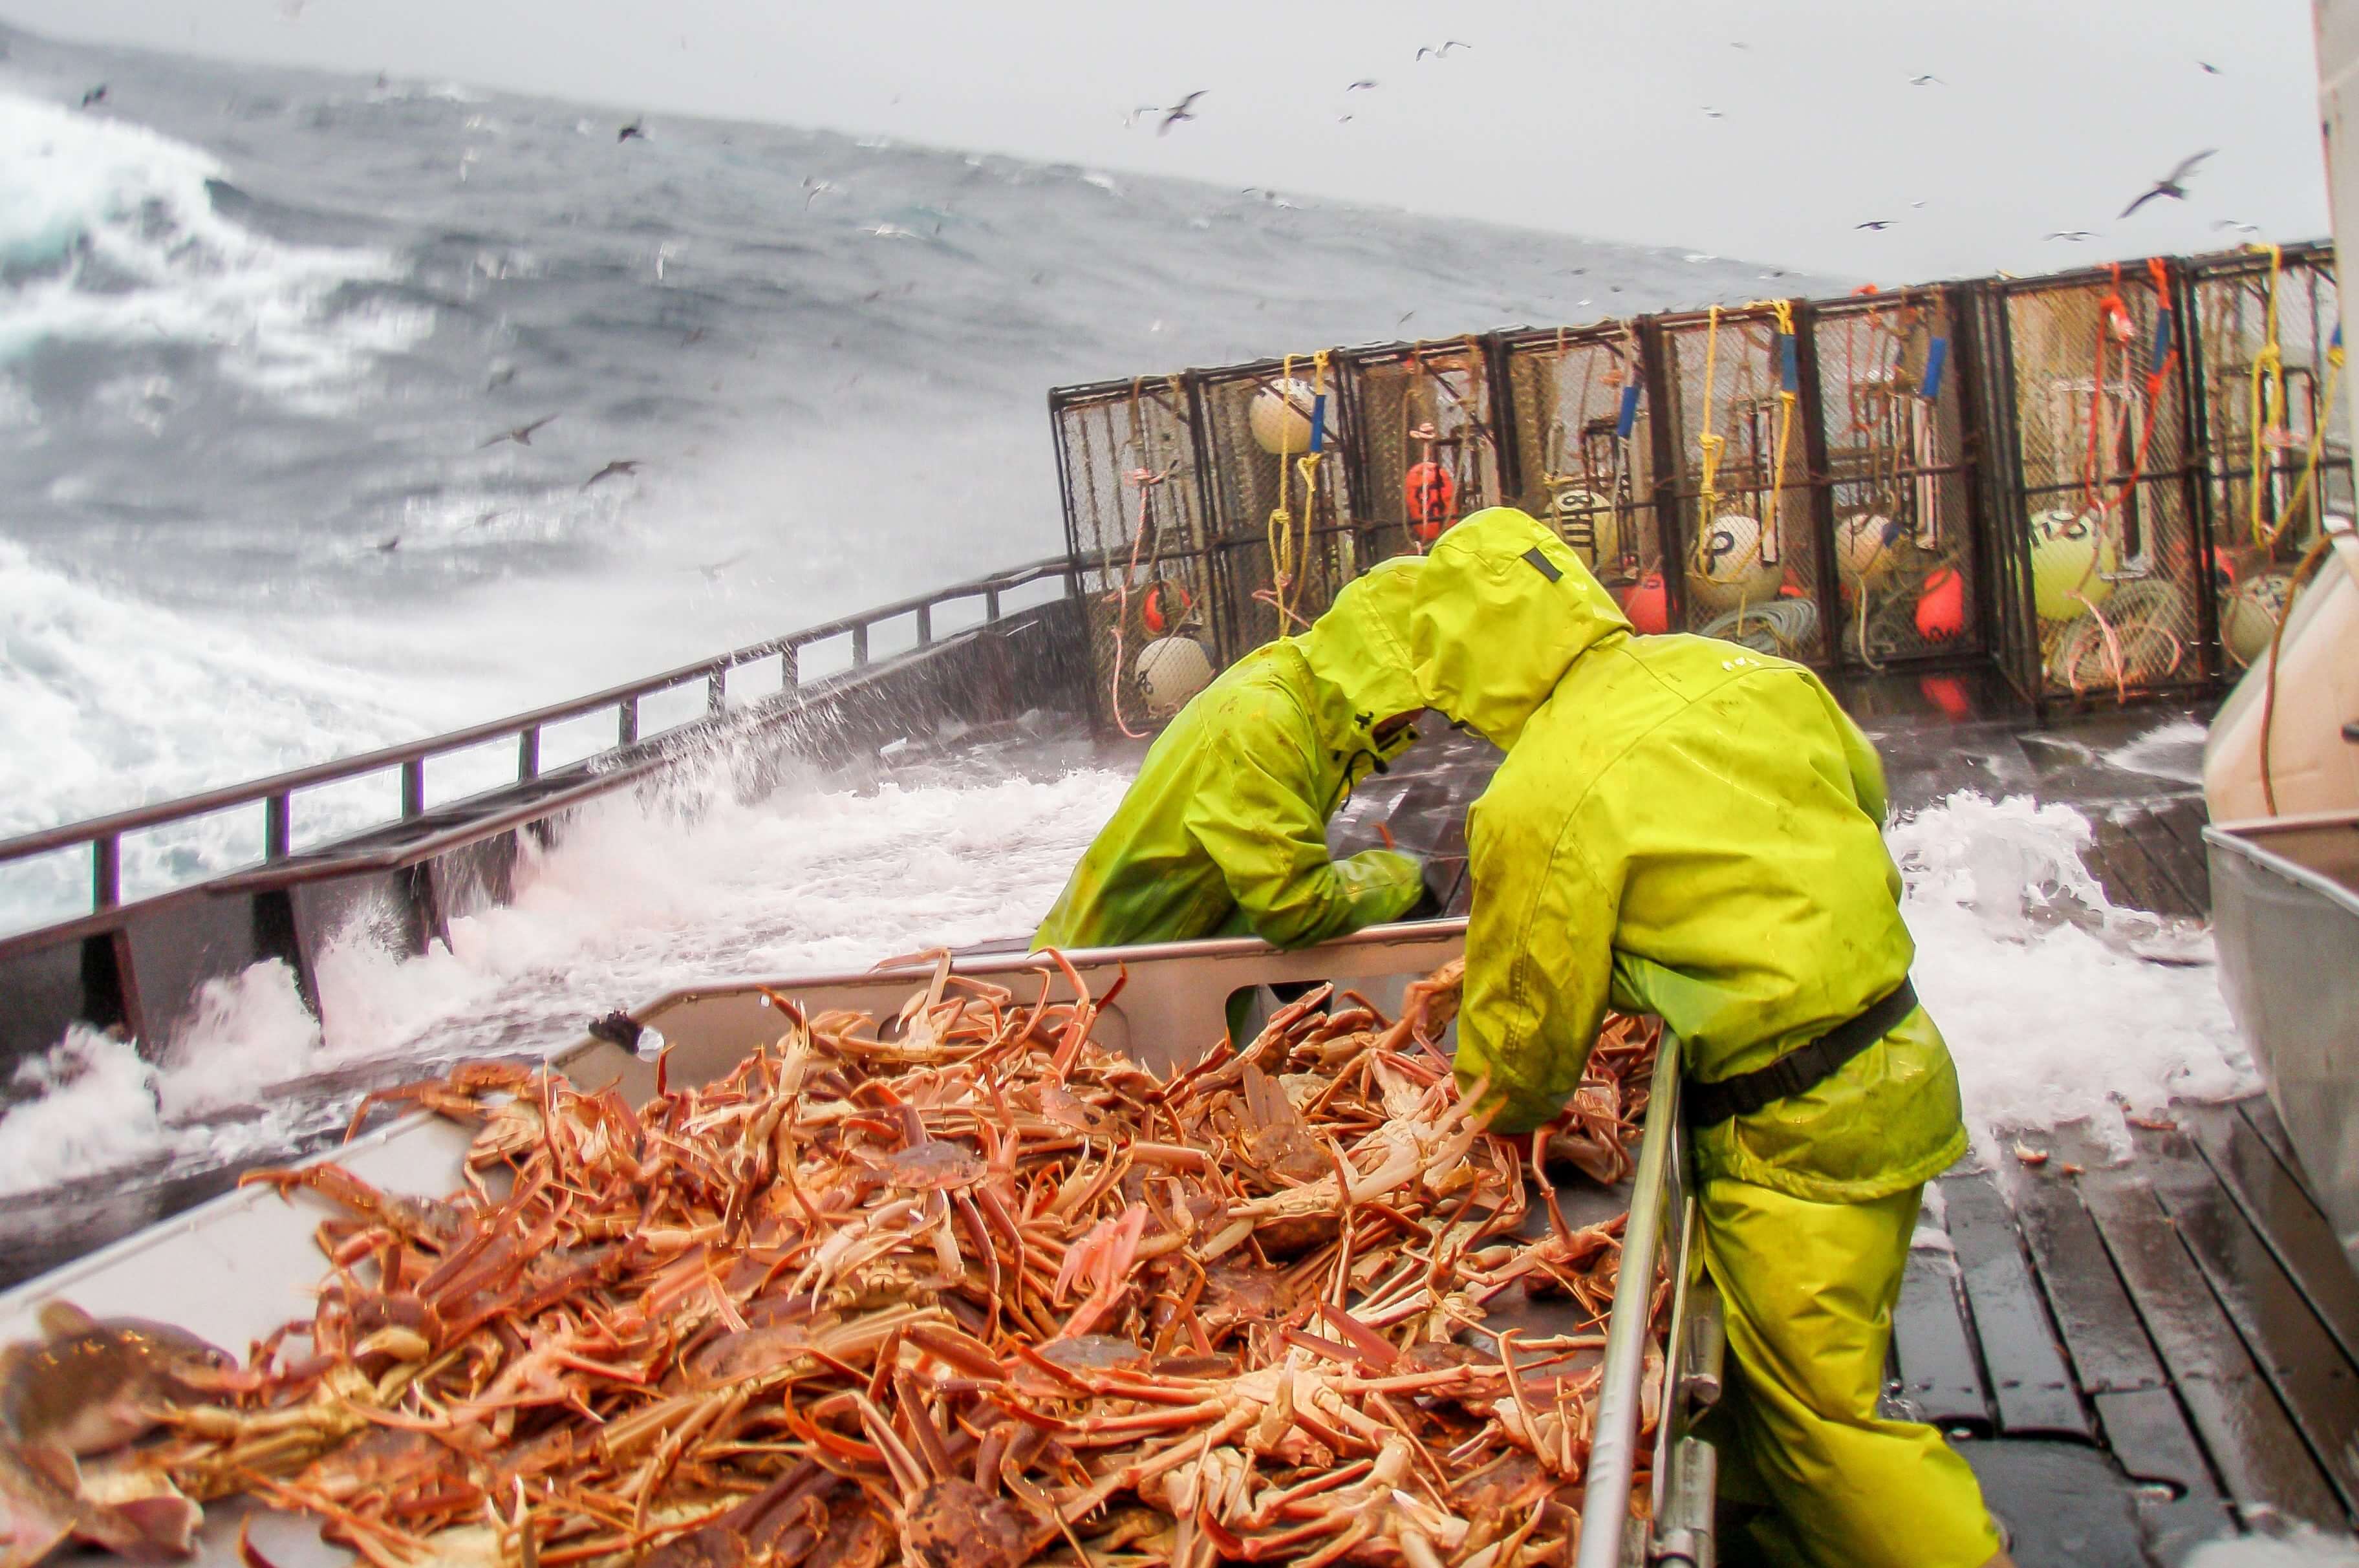 oplossing voor droging van vissersuitrustingen, overalls, visserslaarzen op trawlers